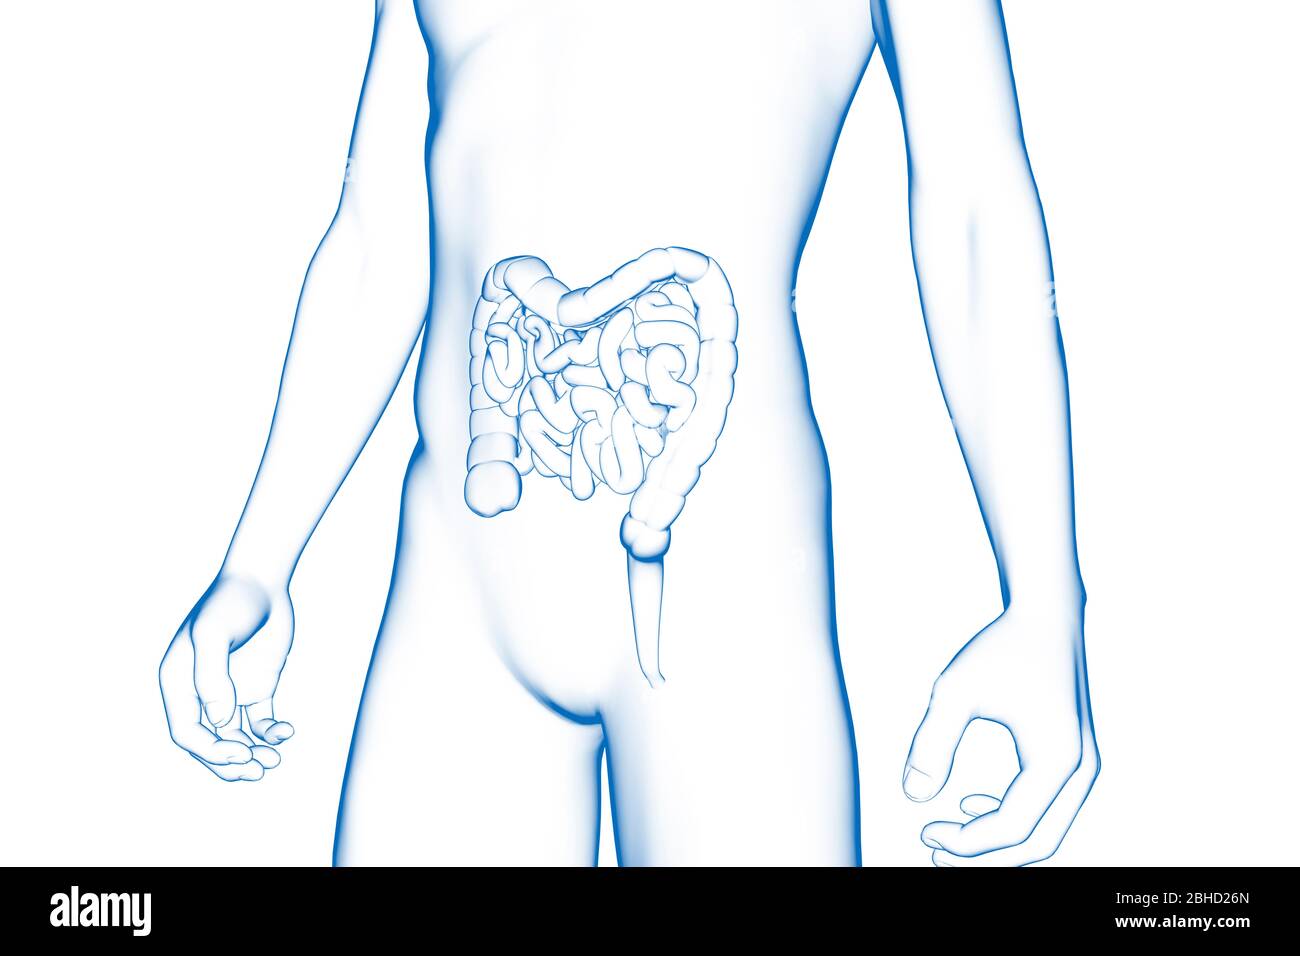 Intestino, órgano del cuerpo humano, modelo médico 3D Foto de stock